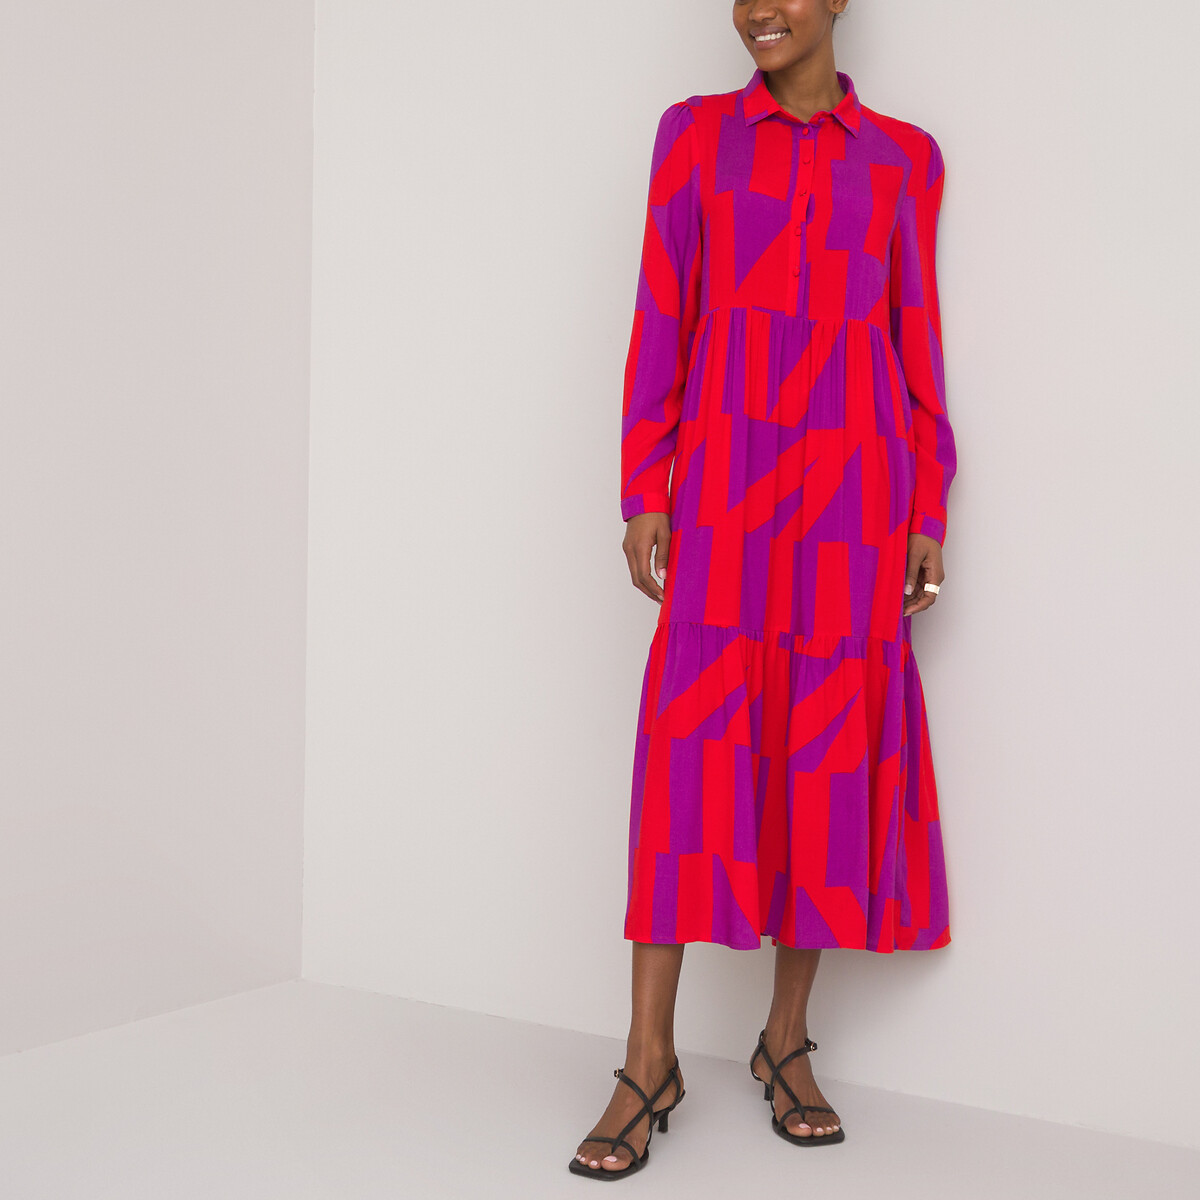 Graphic print midi dress , multi-coloured, La Redoute Collections | La ...